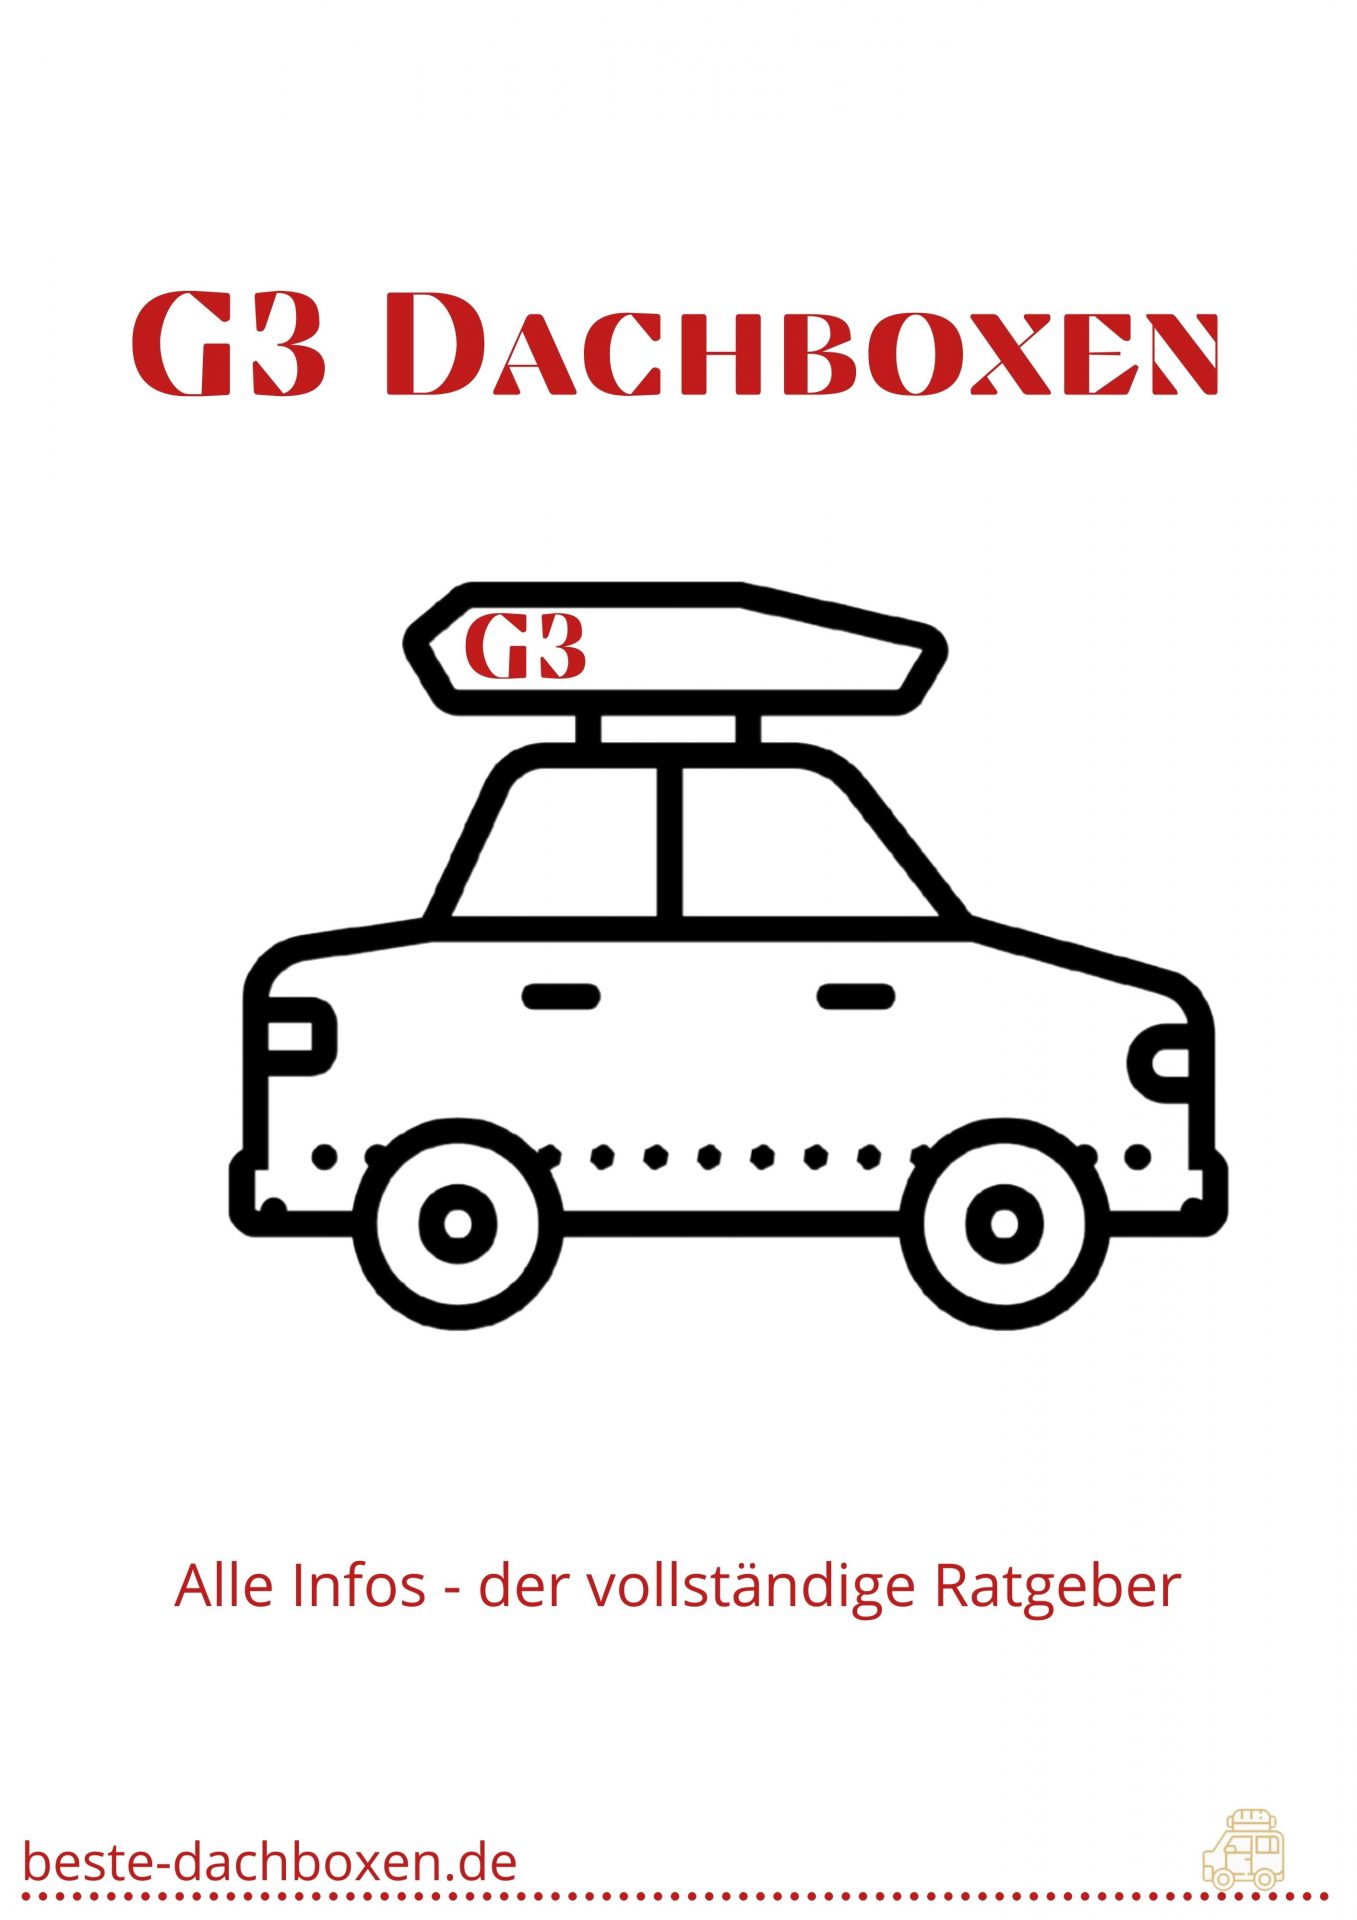 G3 Dachboxen - der vollständige Ratgeber